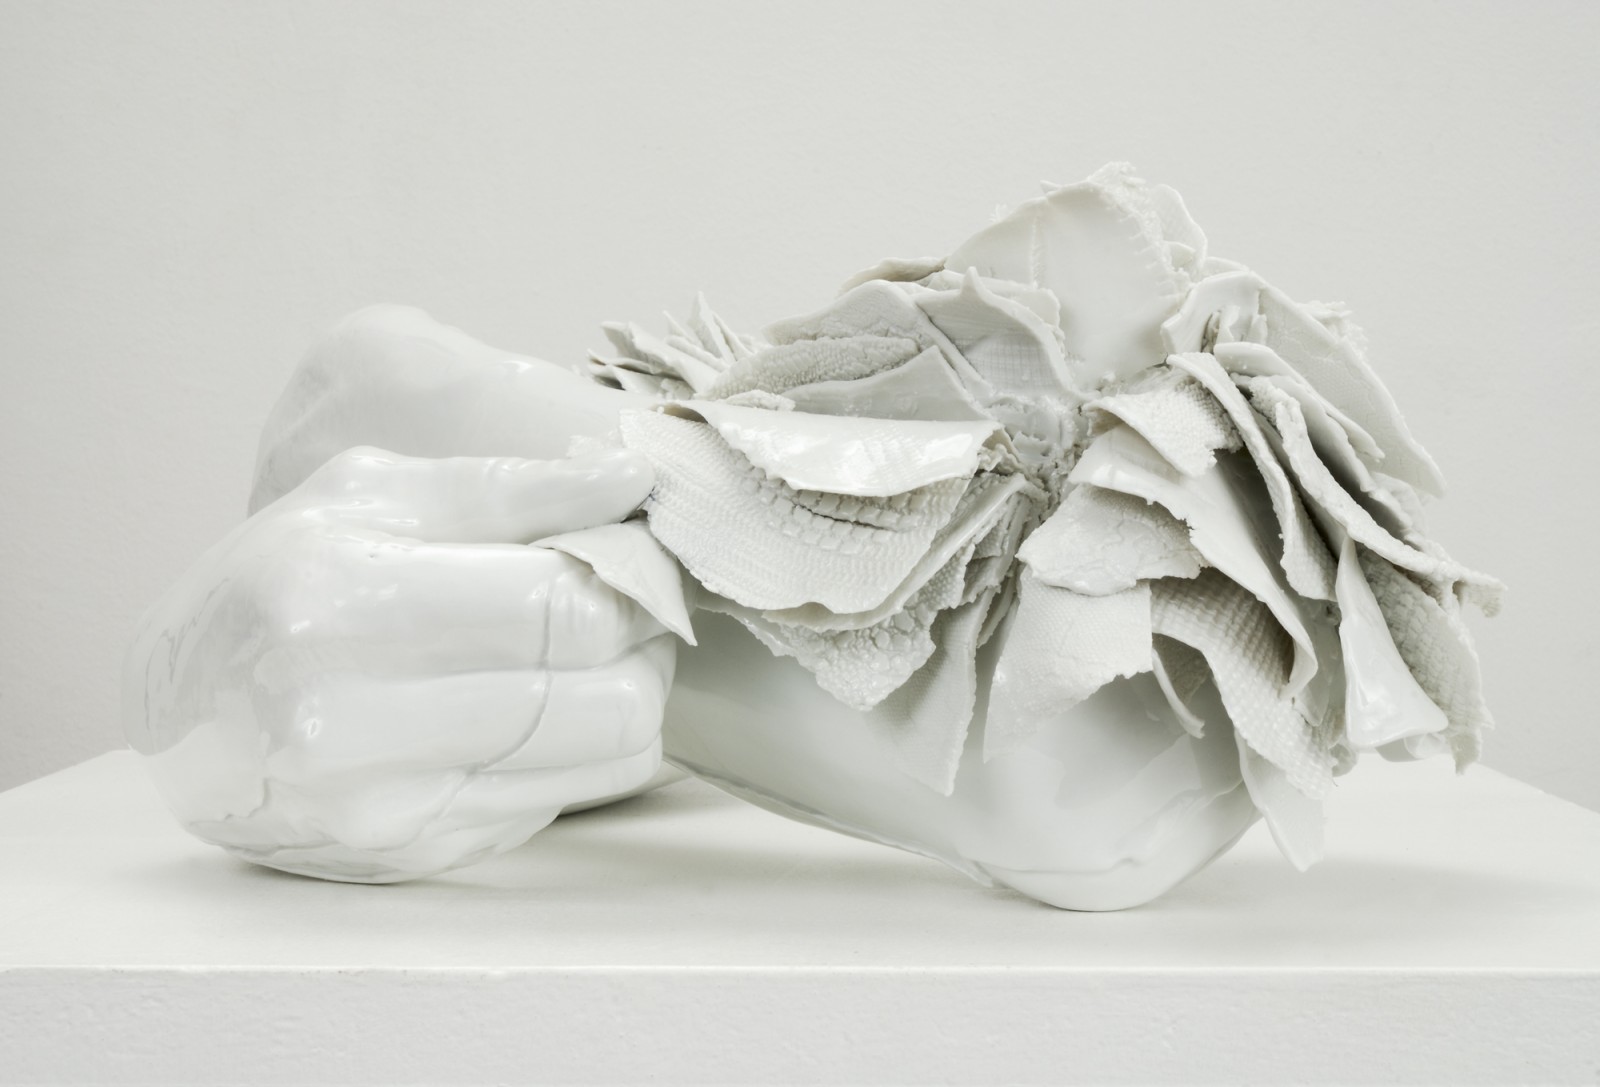 Arme 2011 by Birgit Dieker